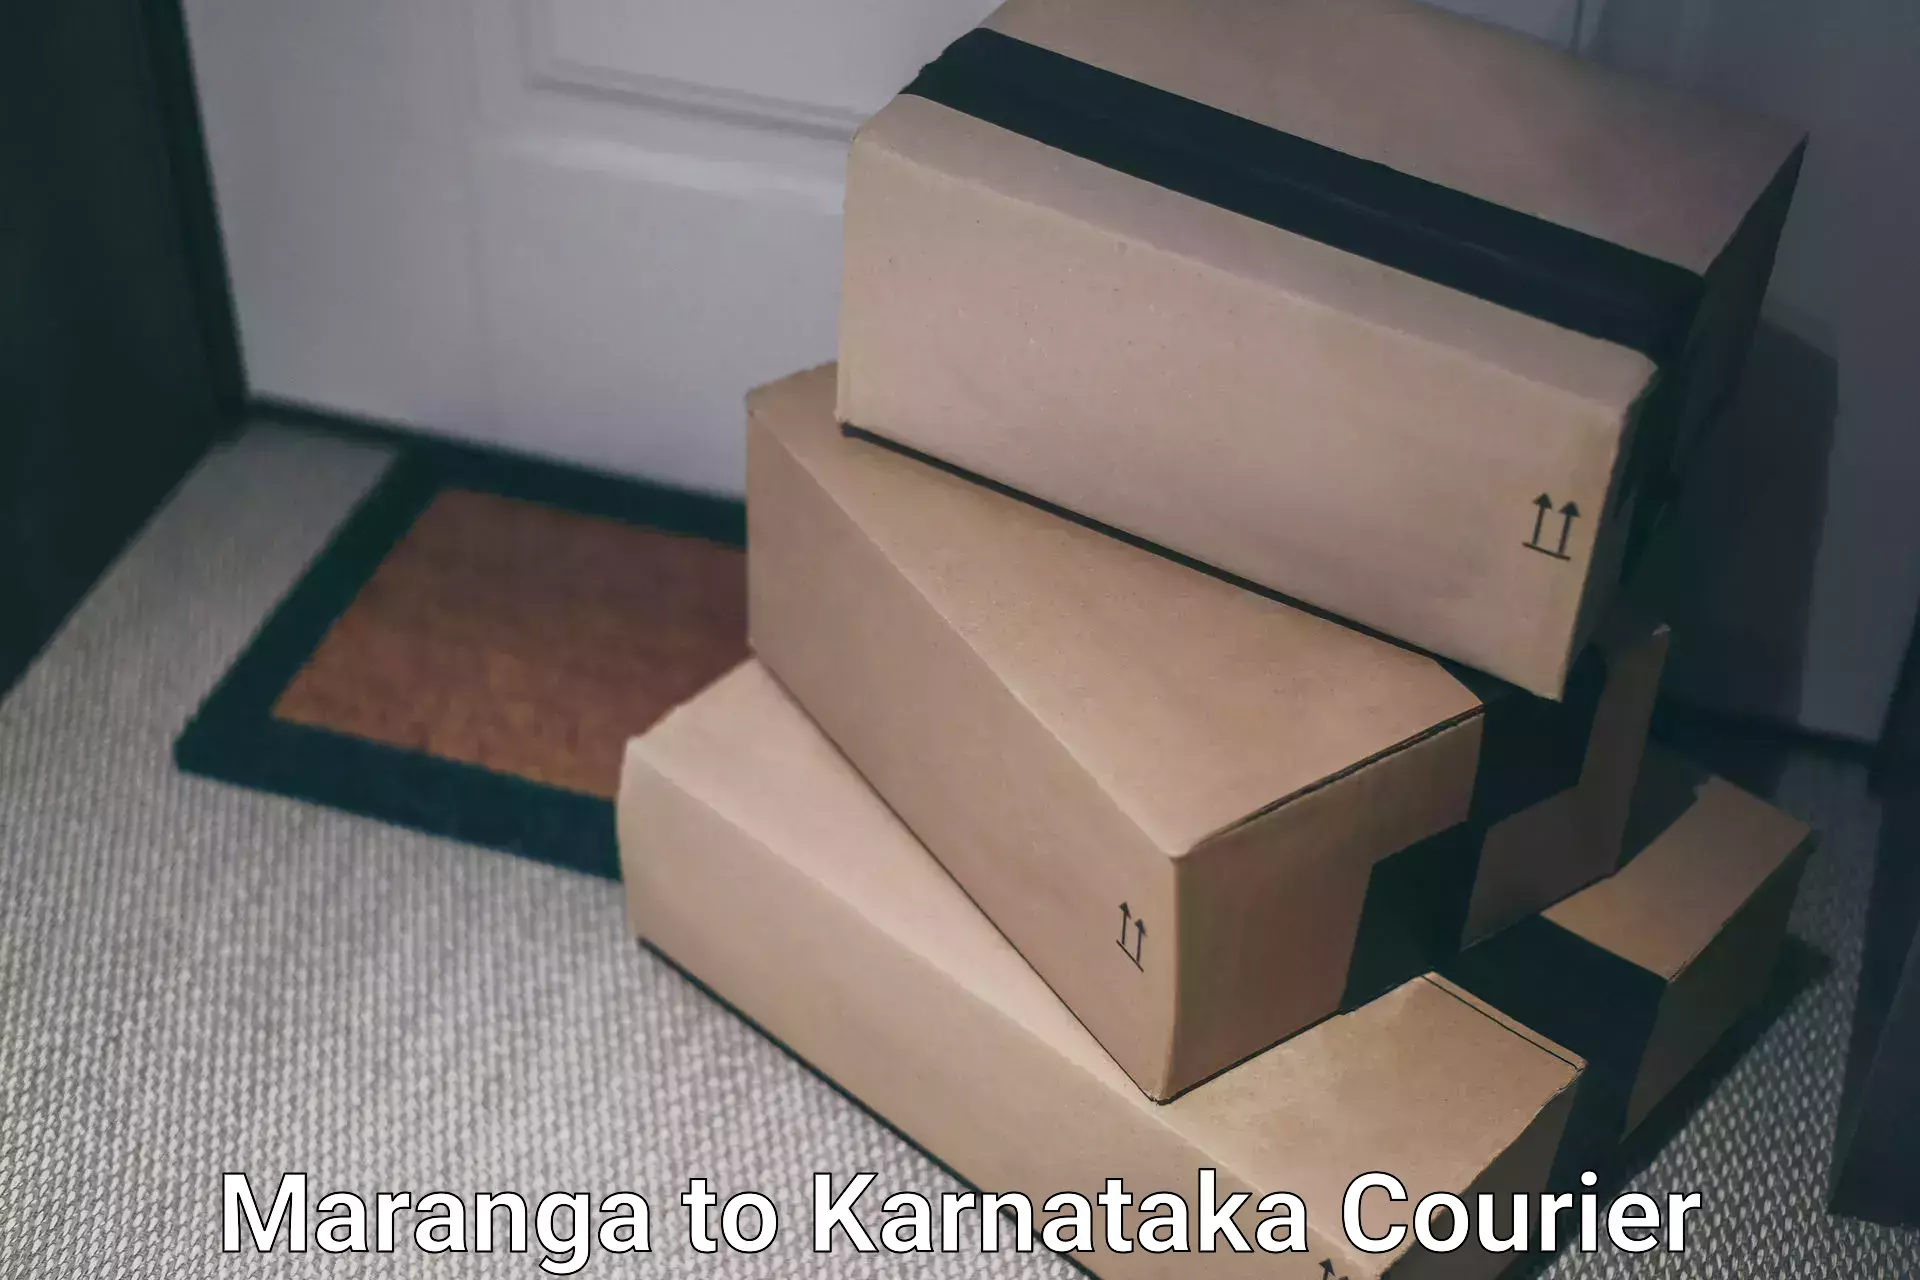 Next-generation courier services Maranga to Udupi